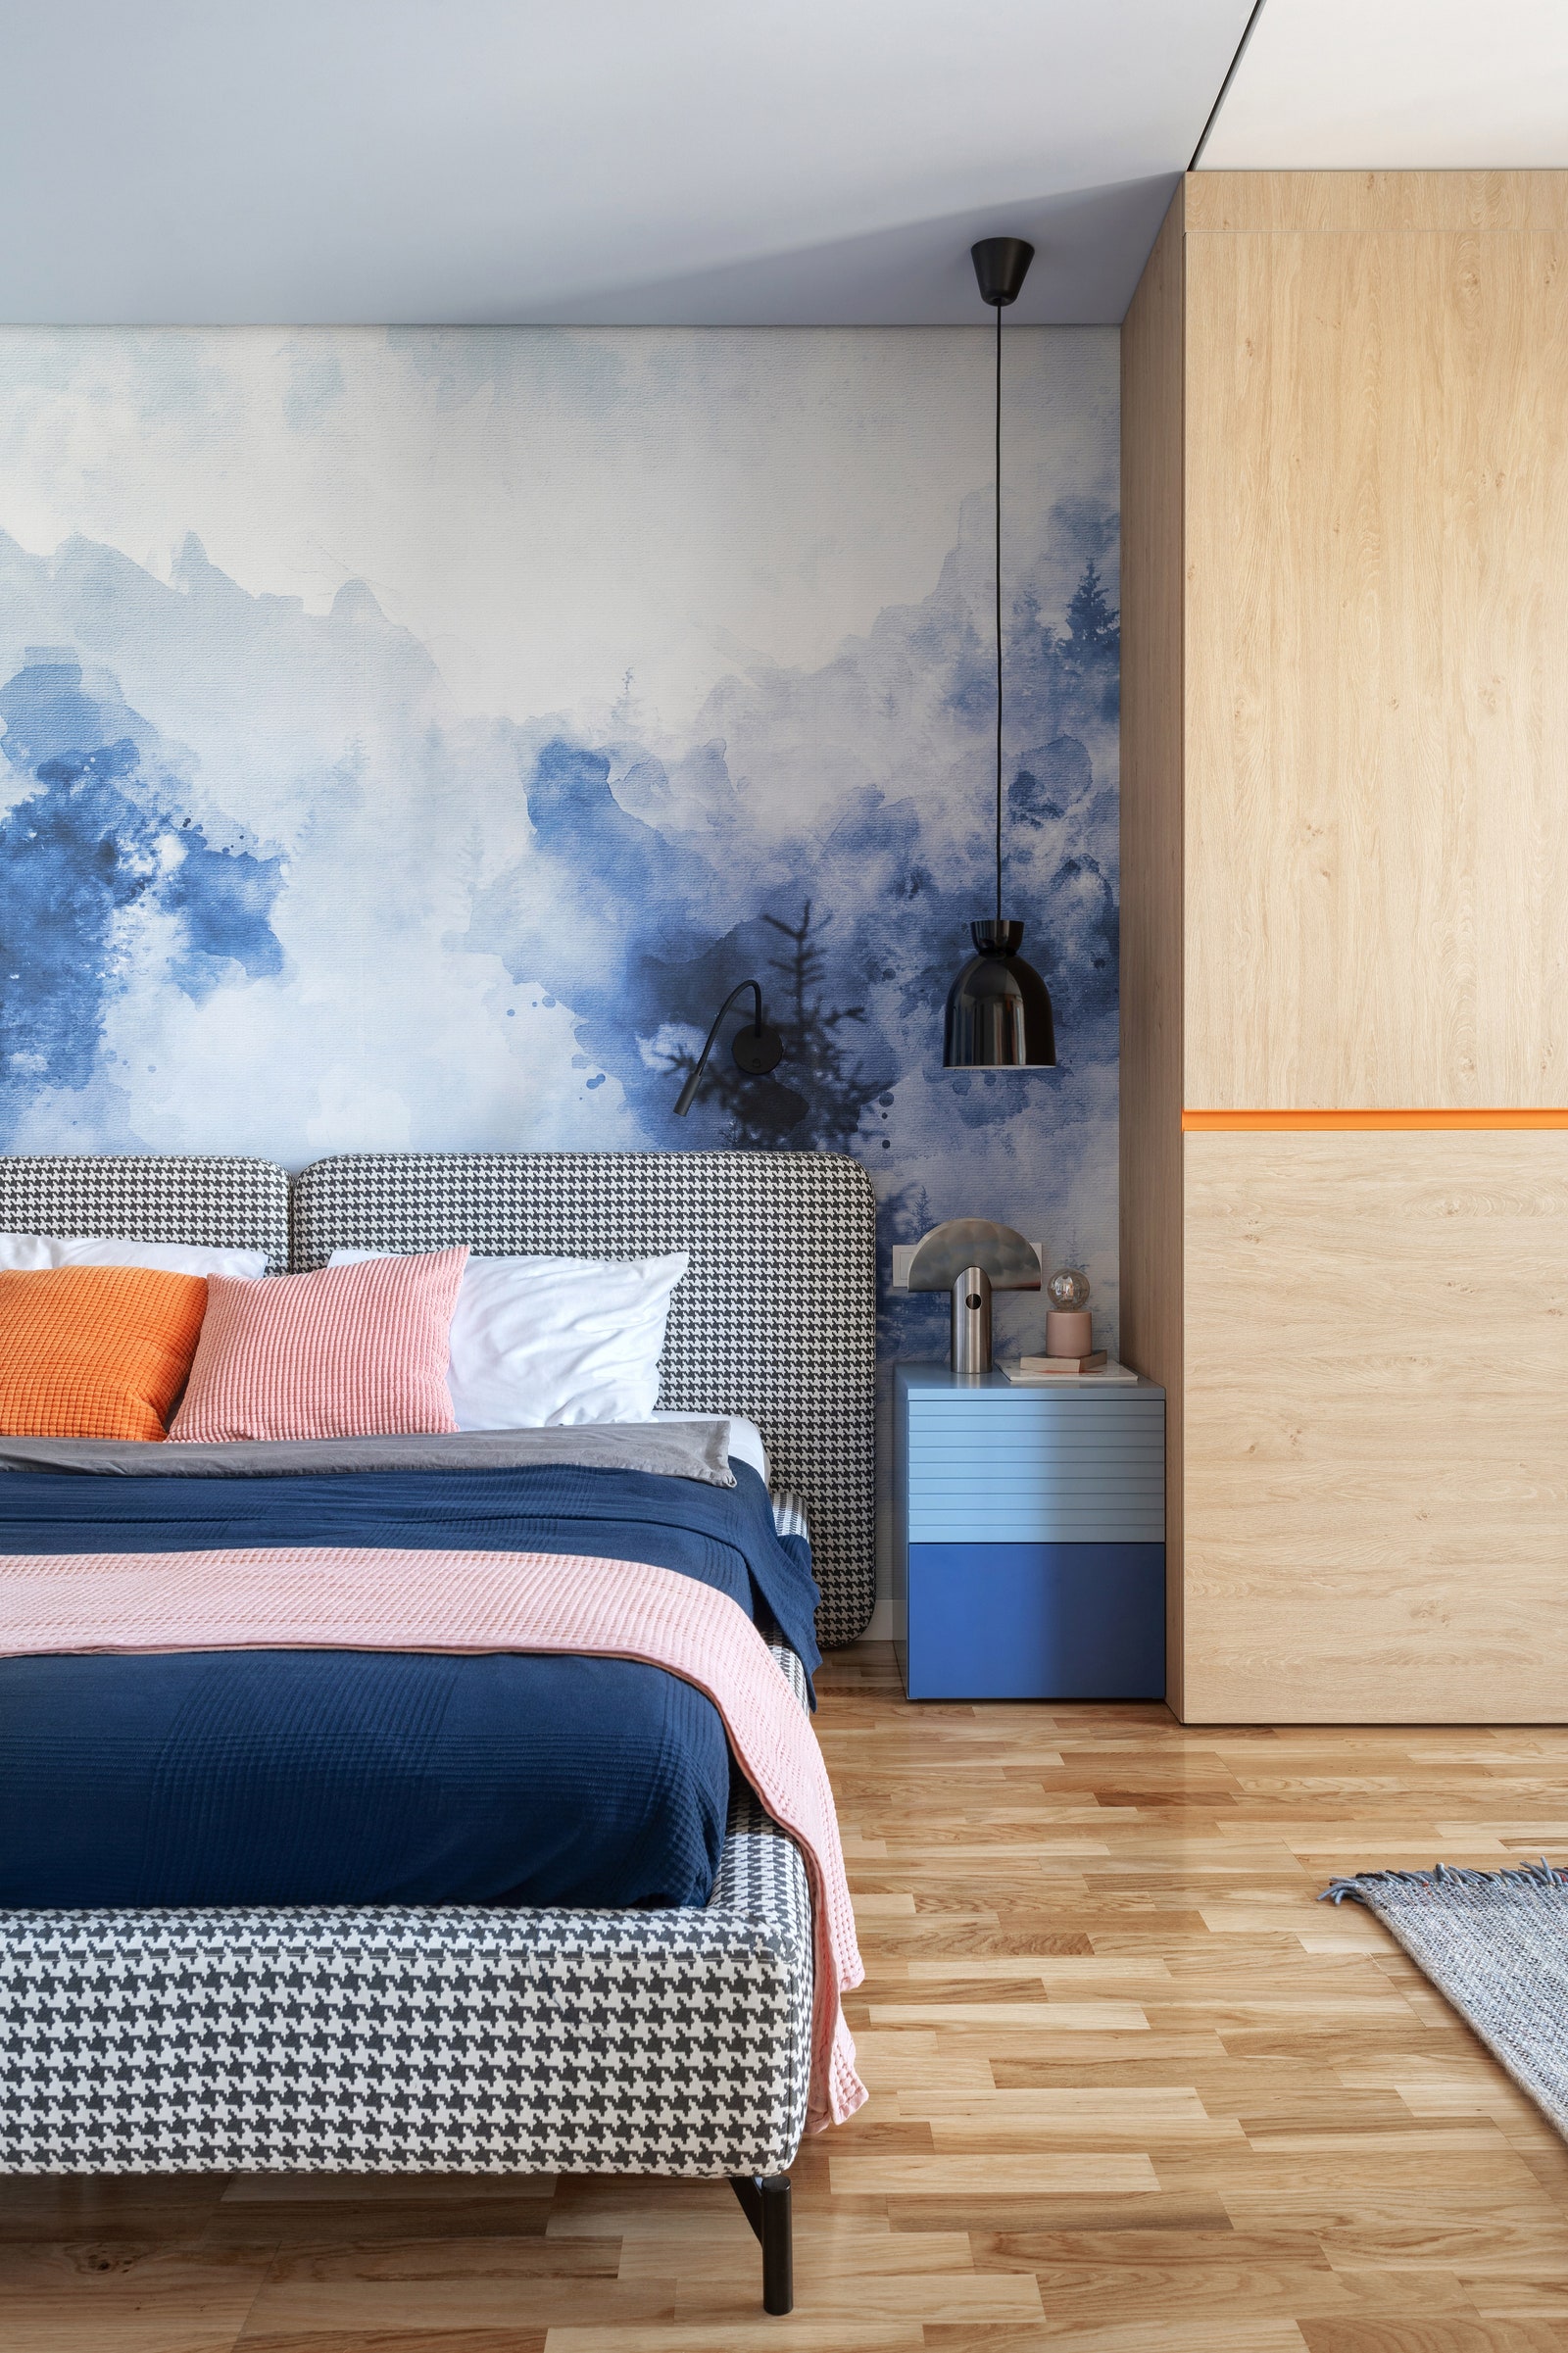 Фрагмент спальни. Кровать Interia тумба IKEA подвесы Nordlux шкаф изготовлен по чертежам дизайнера. На стенах обои Omoioboi.